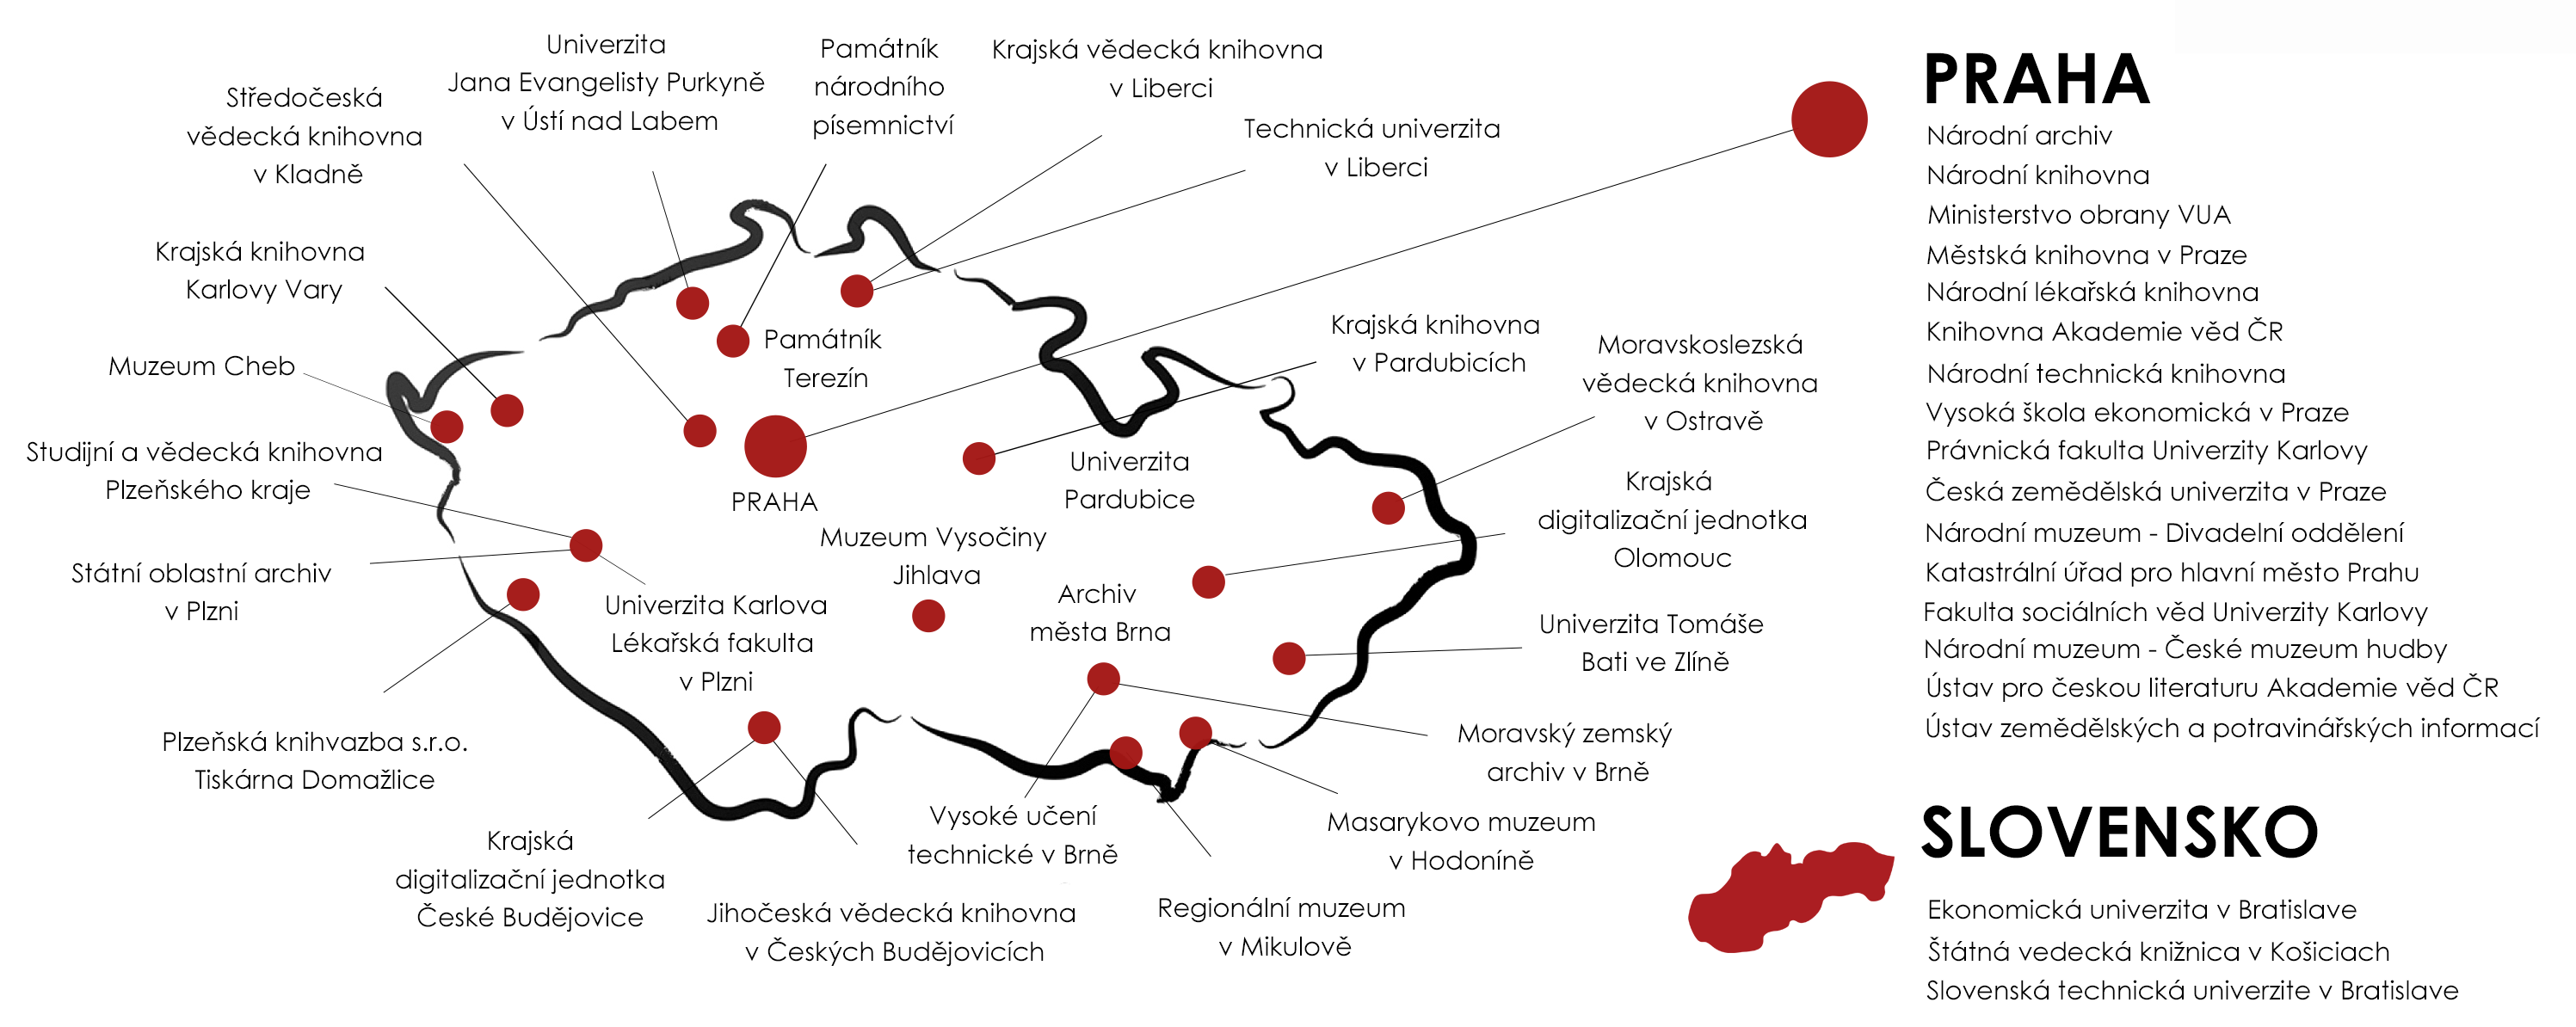 Mapa instalací knižních skenerů i2S v České republice a na Slovensku